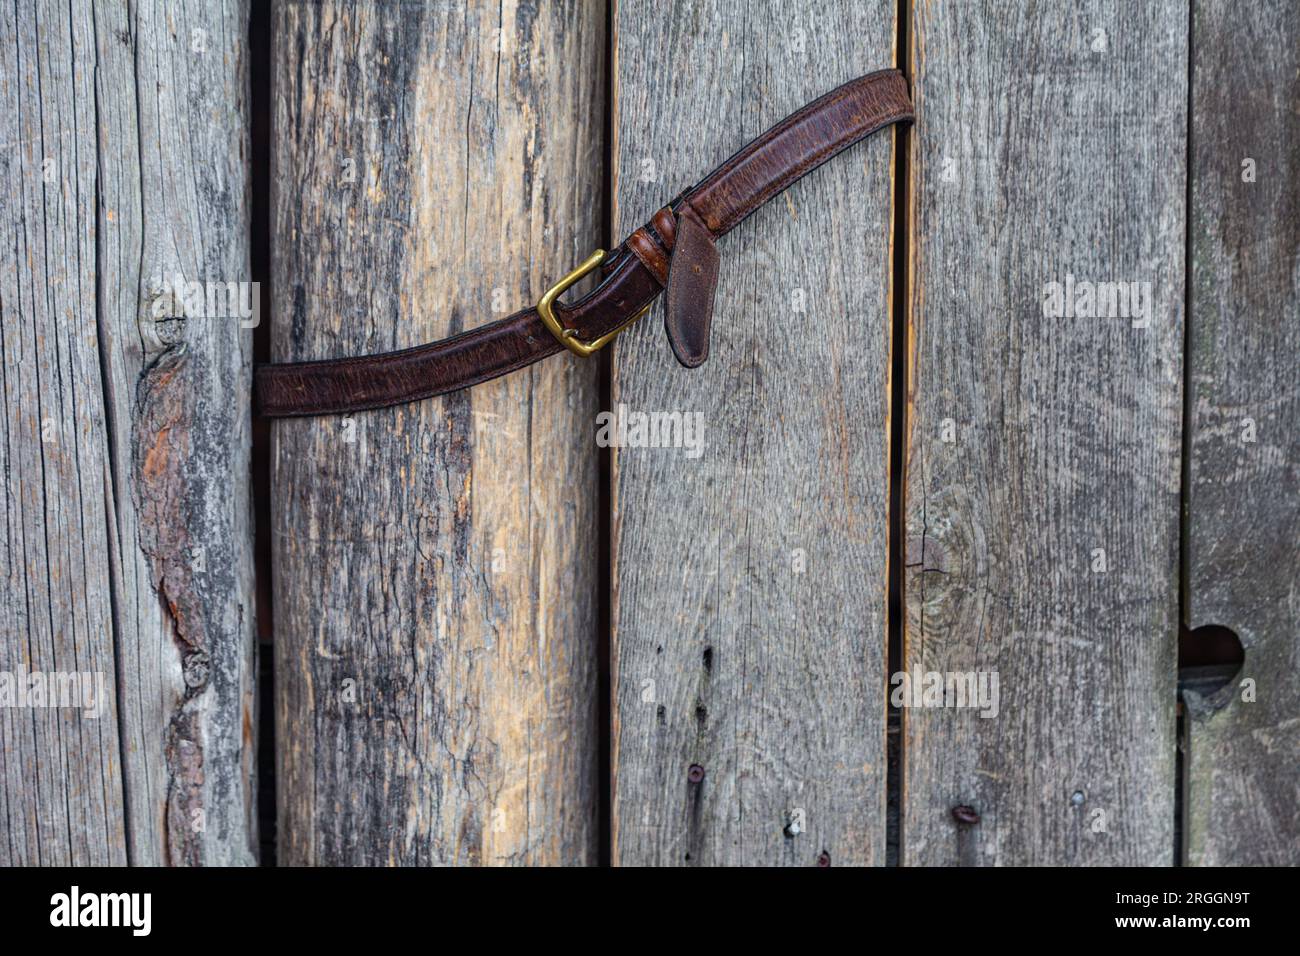 Una vecchia cintura in pelle utilizzata per trattenere un cancello oscillante in legno Foto Stock